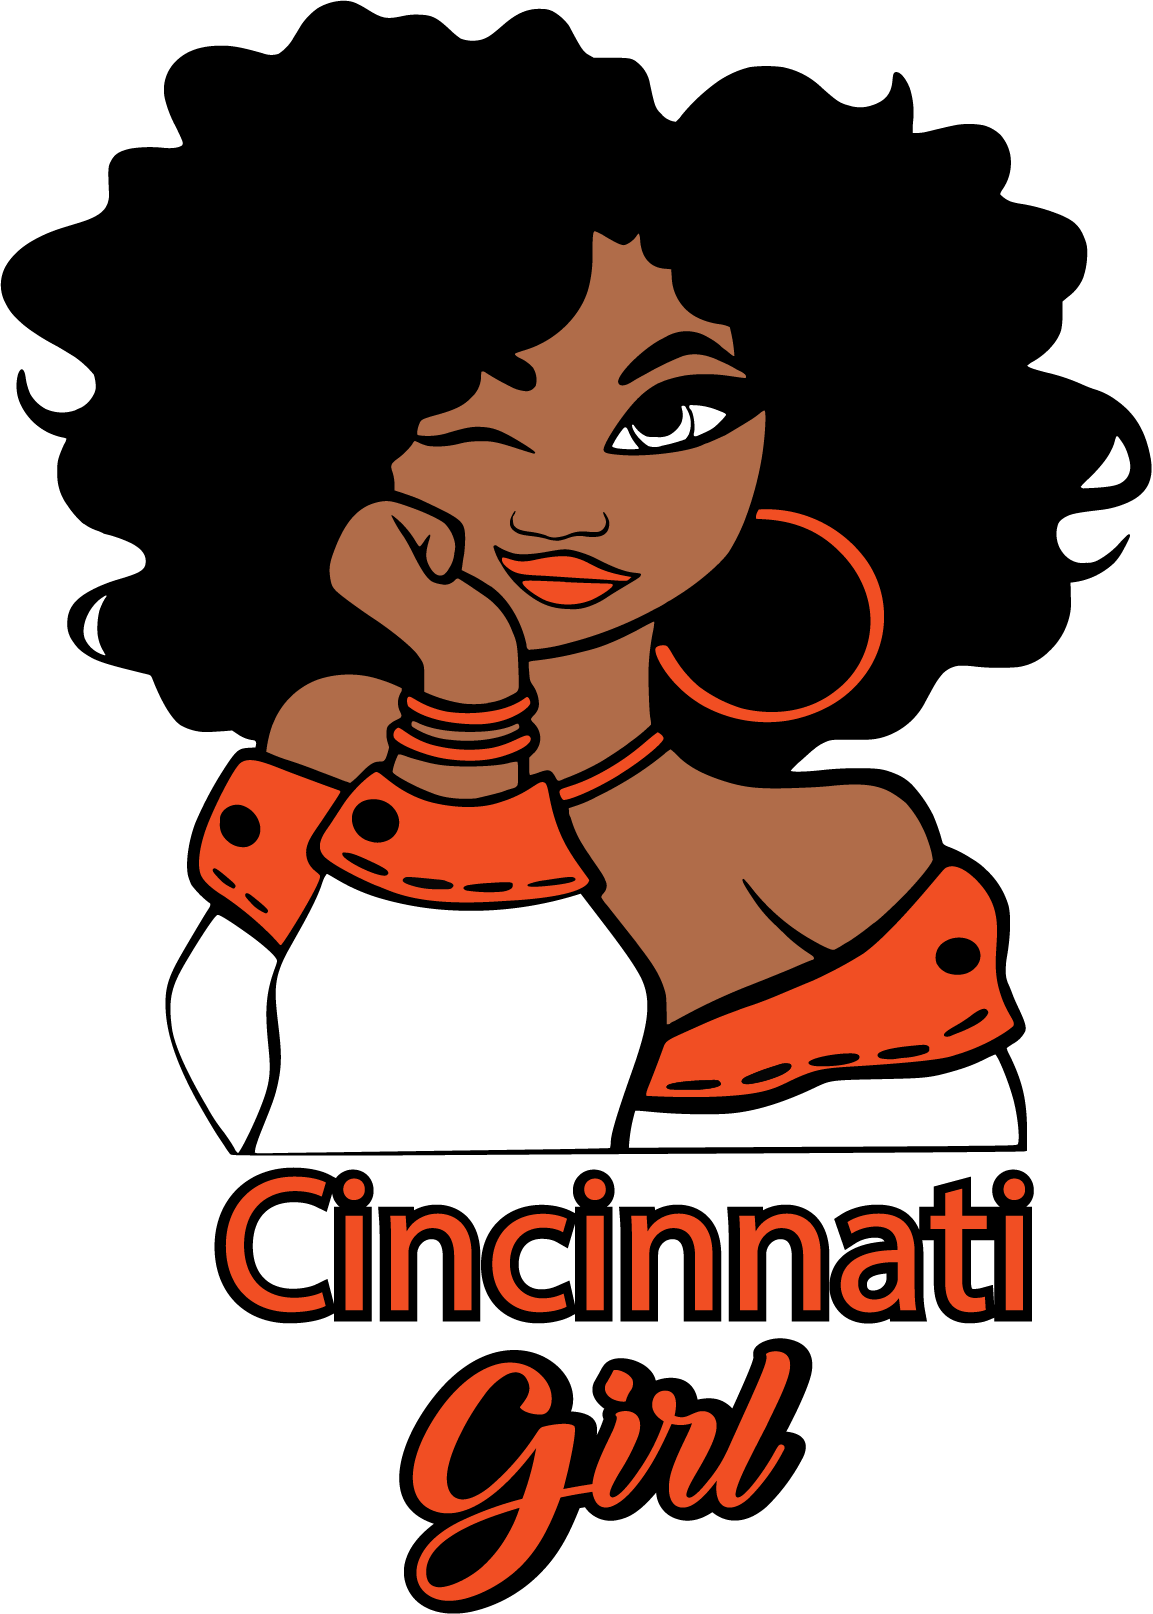 Black Cincinnati Girl